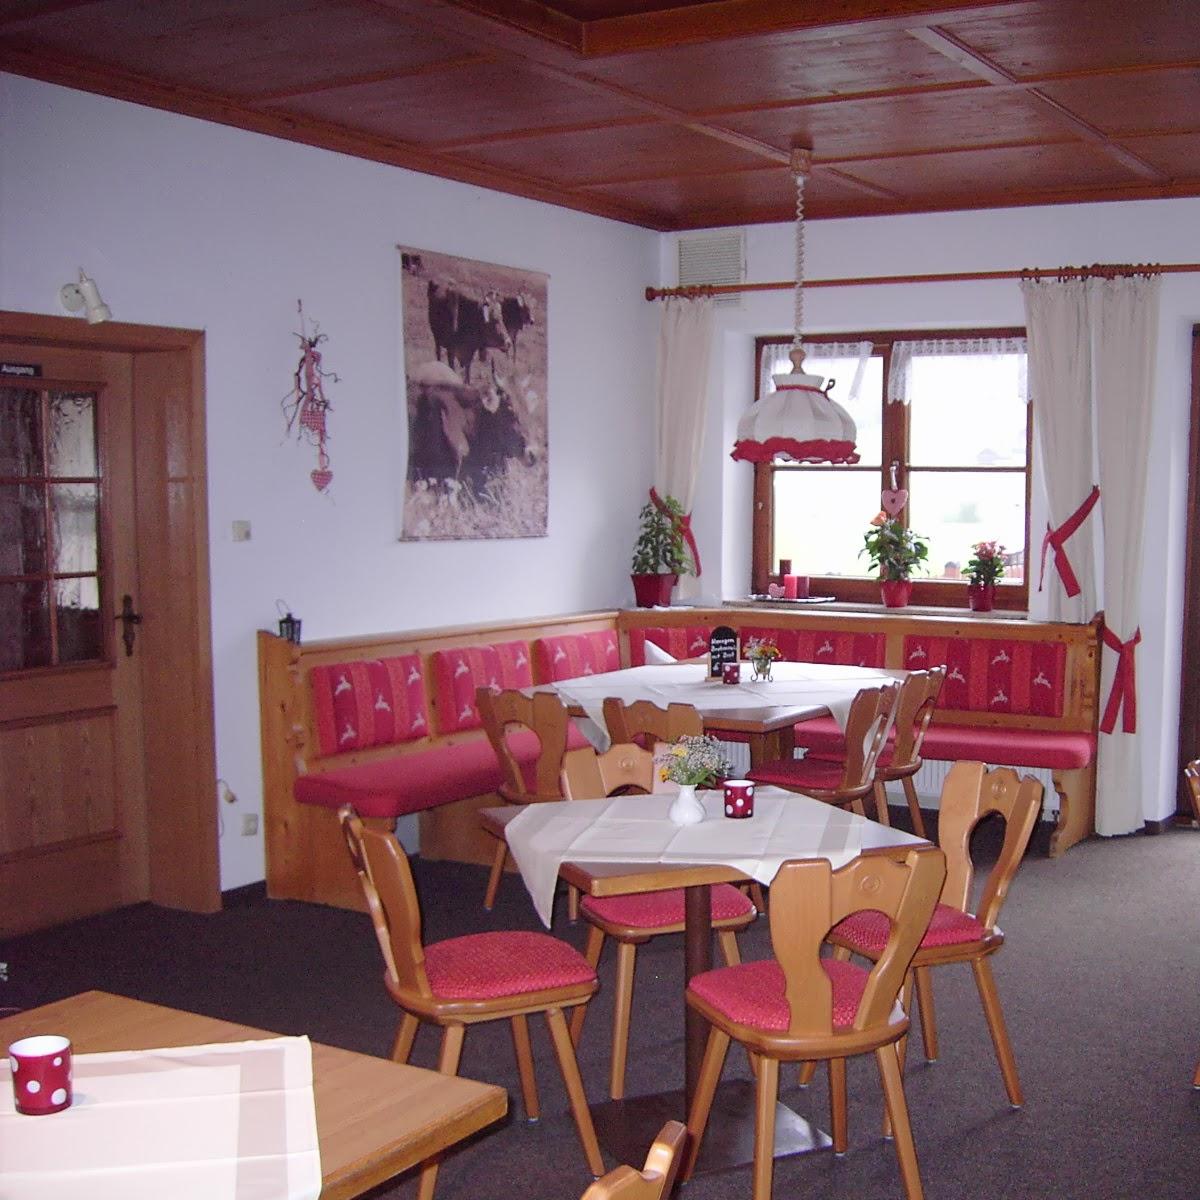 Restaurant "Cafe Tannenhof" in Blaichach